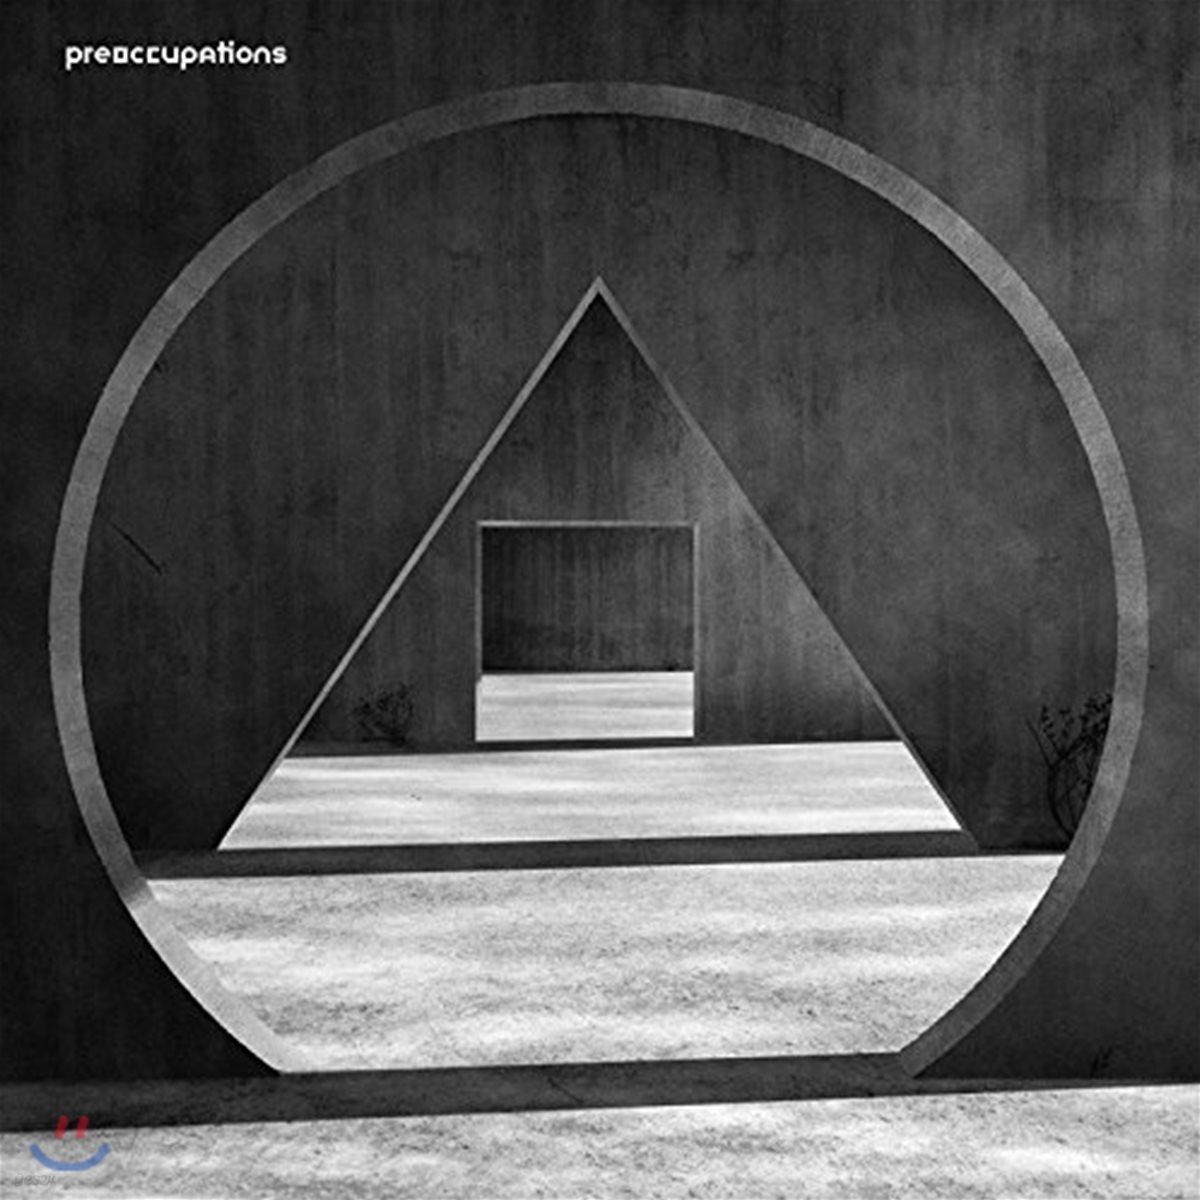 Preoccupations (프리오큐페이션스)- New Material [블랙 & 그레이 컬러 LP]